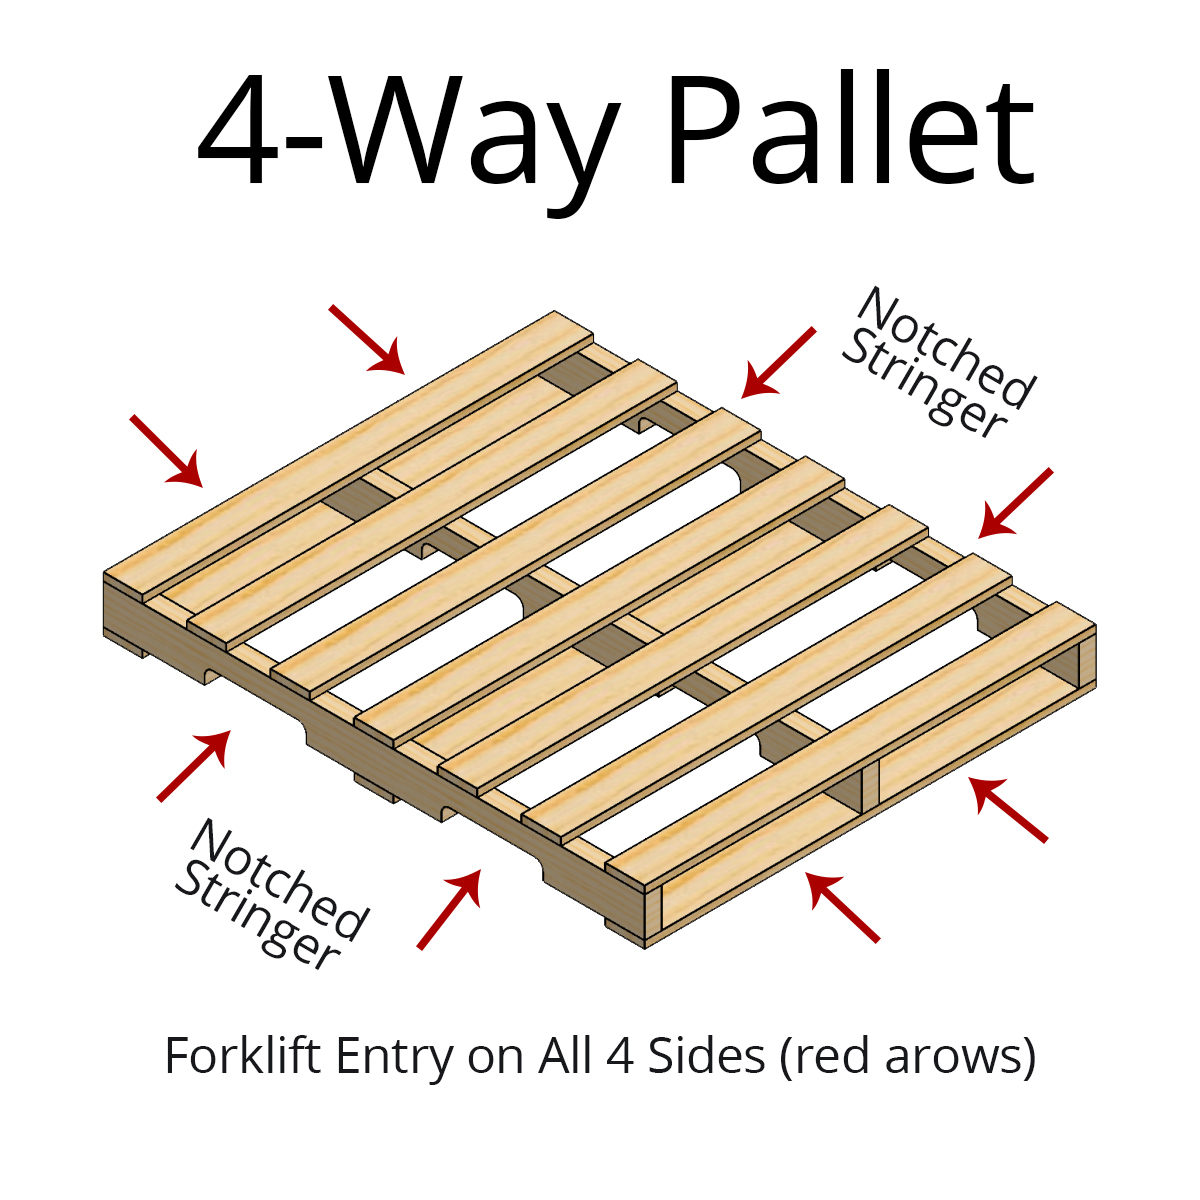 2-Way vs 4-Way Pallets